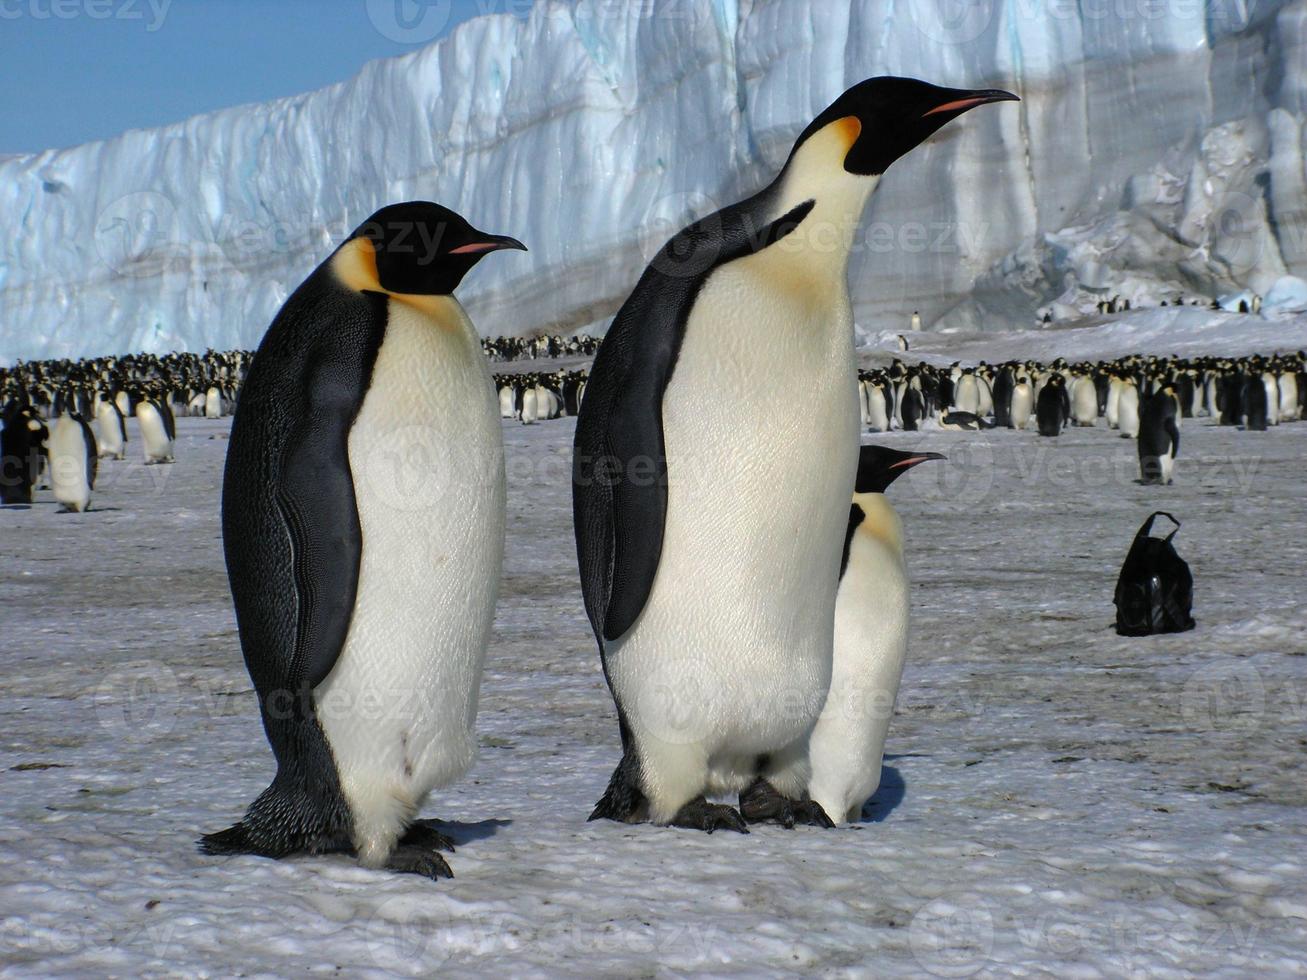 manchots empereurs dans les glaces de l'antarctique photo